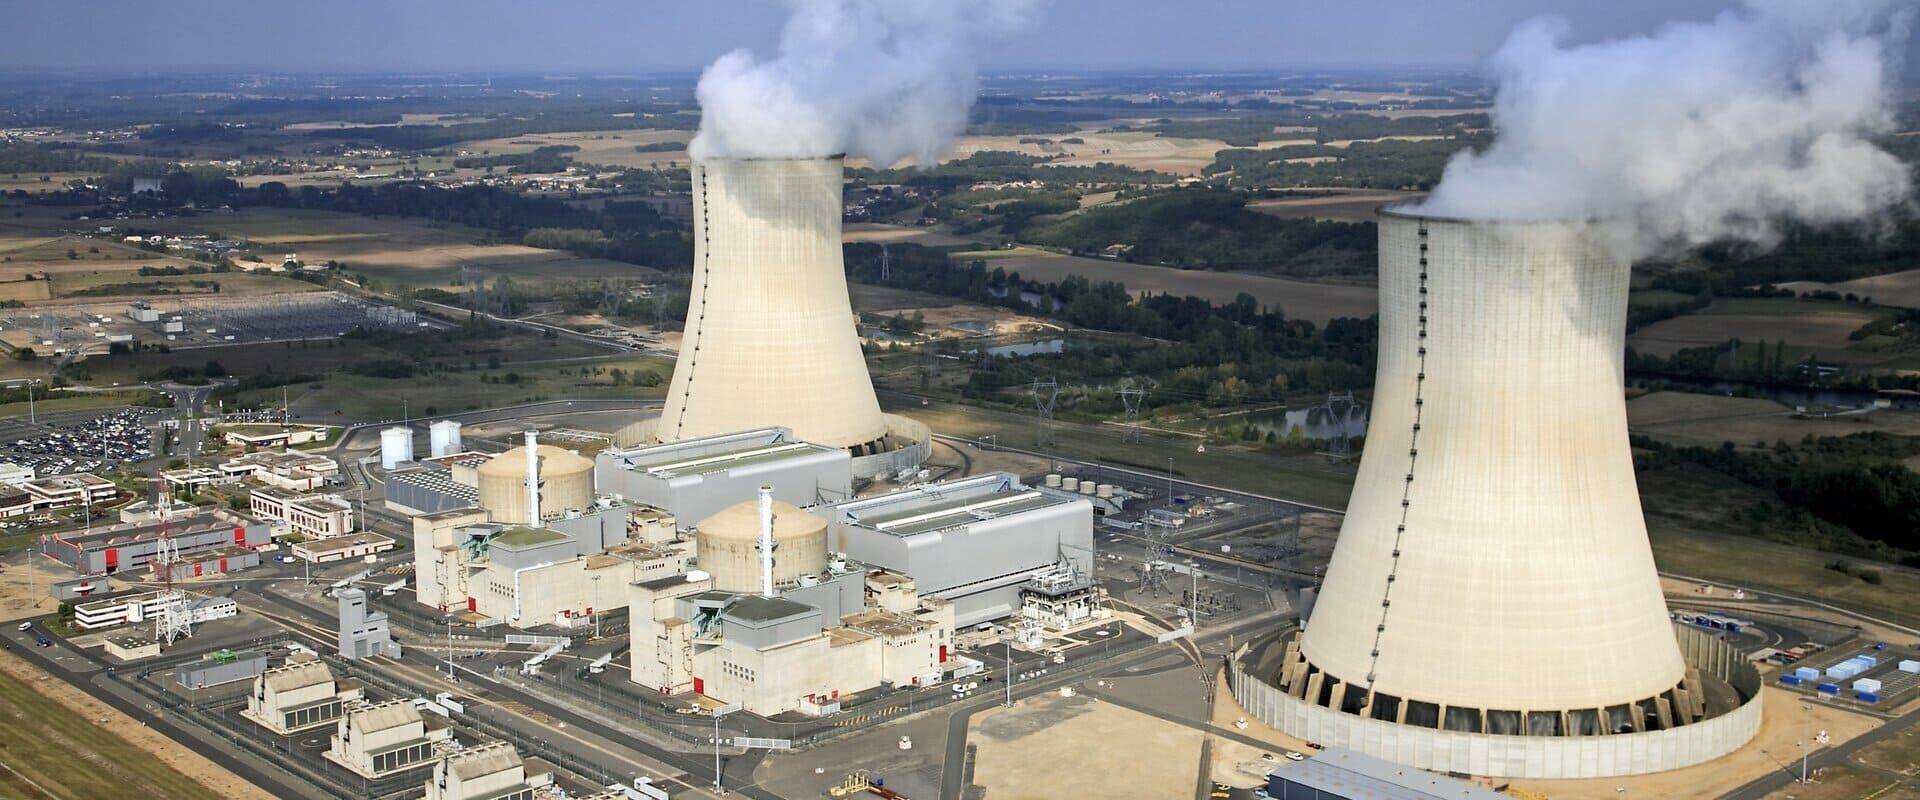 Combien coûtera l'électricité nucléaire aux consommateurs français avis de Flash Pro Energy courtier en énergie professionnel Toulouse et Montpellier